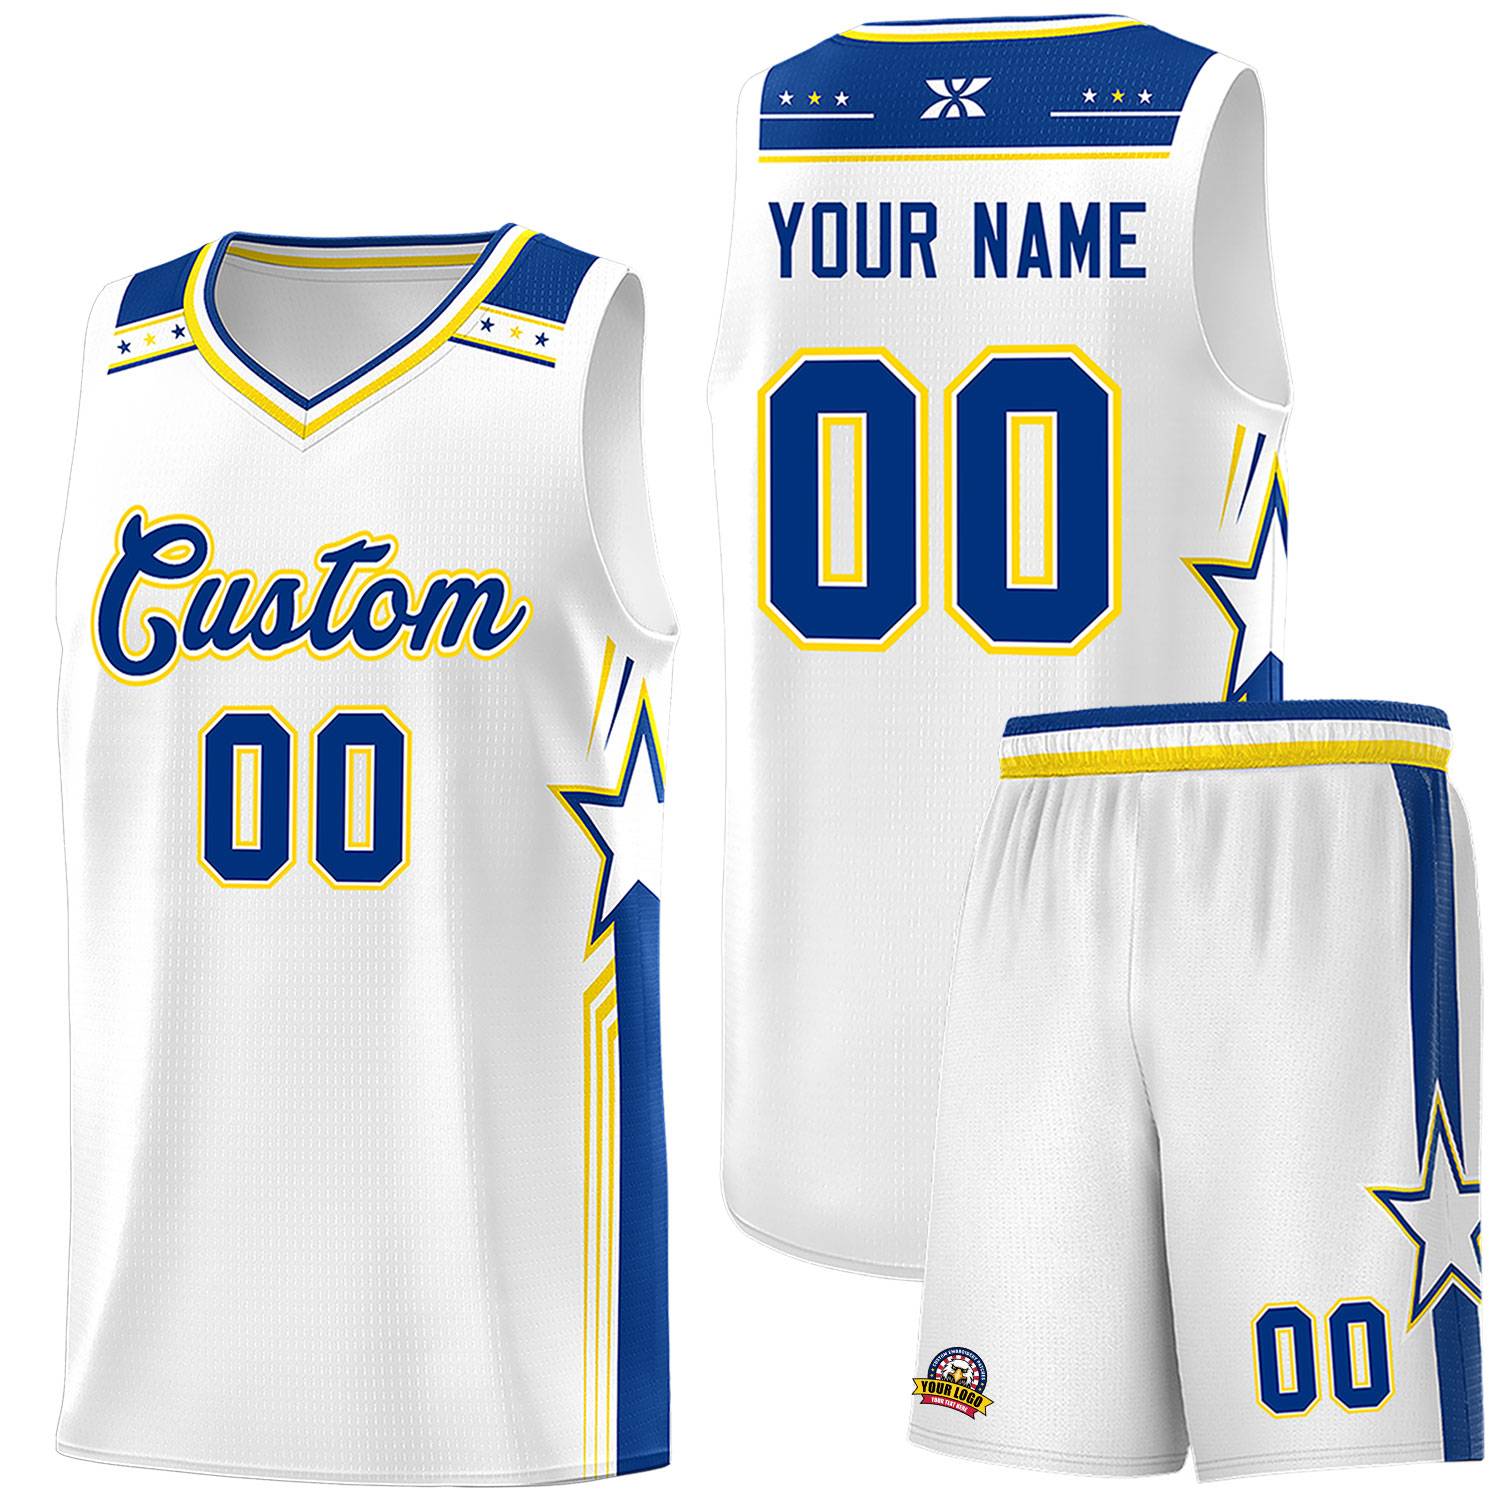 Custom White Royal Star Graffiti Pattern Sports Uniform Basketball Jersey